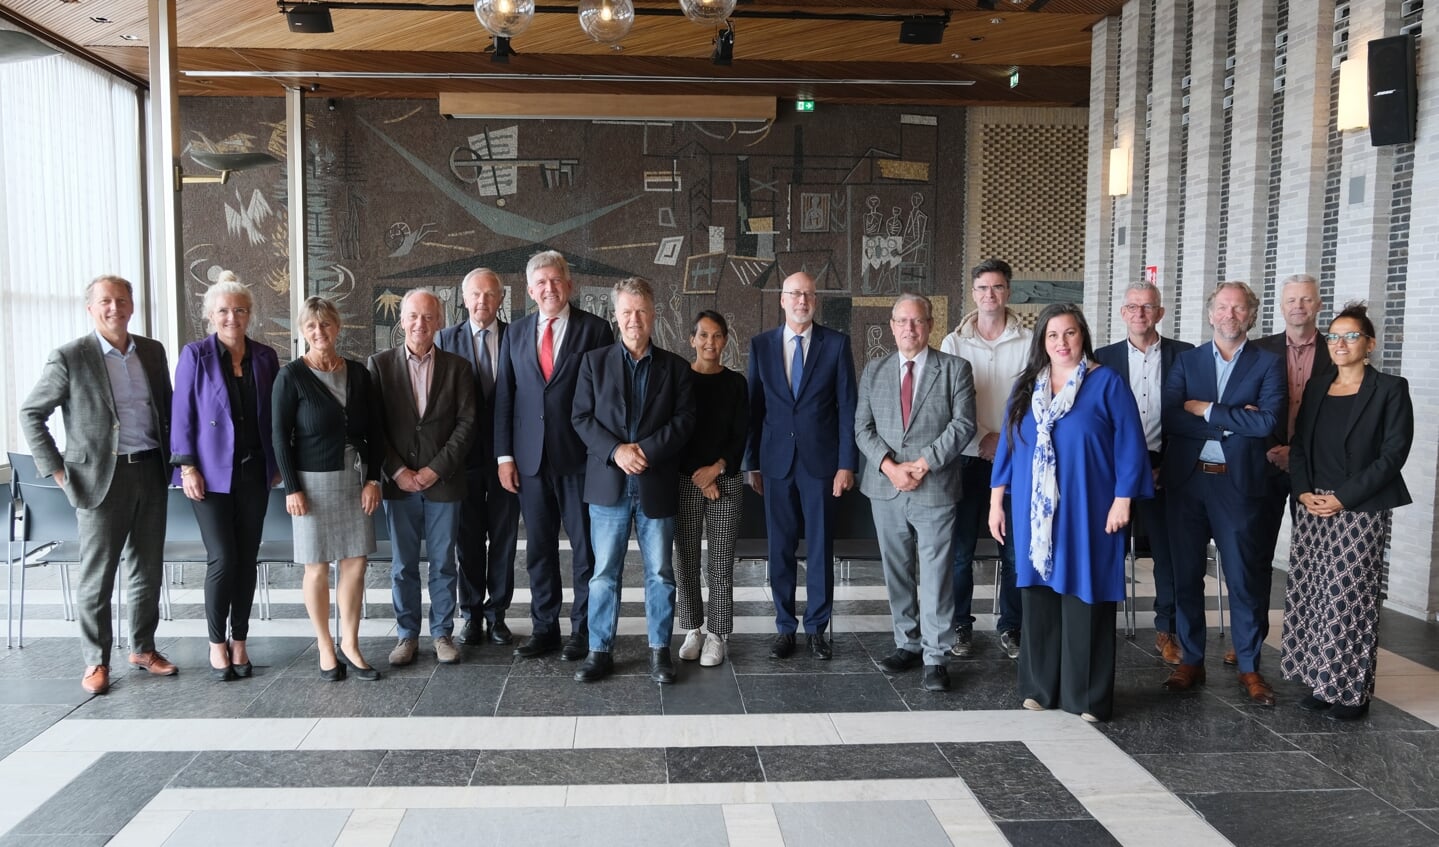 Het werkbezoek van Eerste Kamerleden over de aanpak van ondermijning. De delegatie bezocht Arnhem en Velp op uitnodiging van de burgemeester van Scherpenzeel.